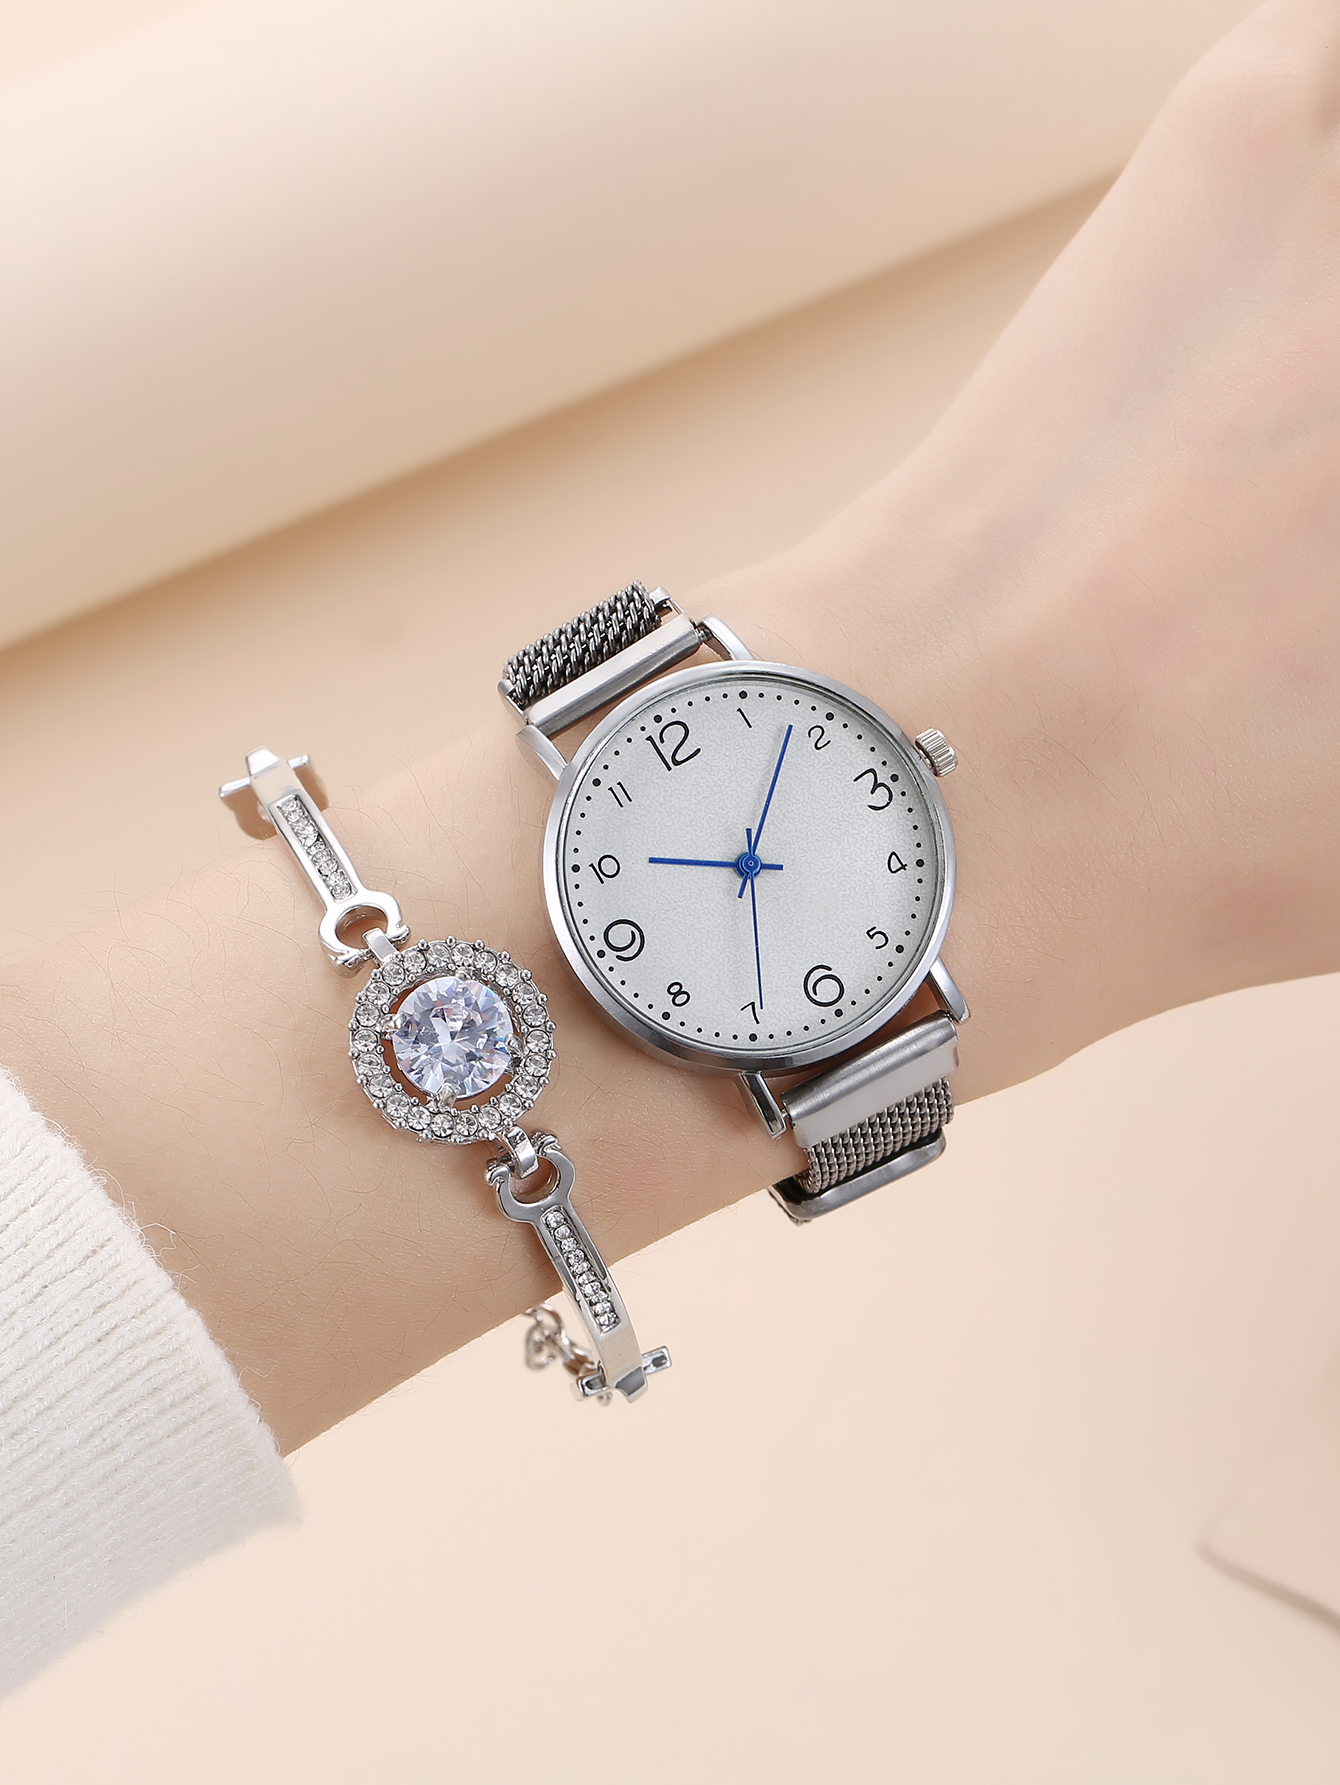 Petite montre  quartz haut de gamme personnalise  la mode simple et  la modepicture6